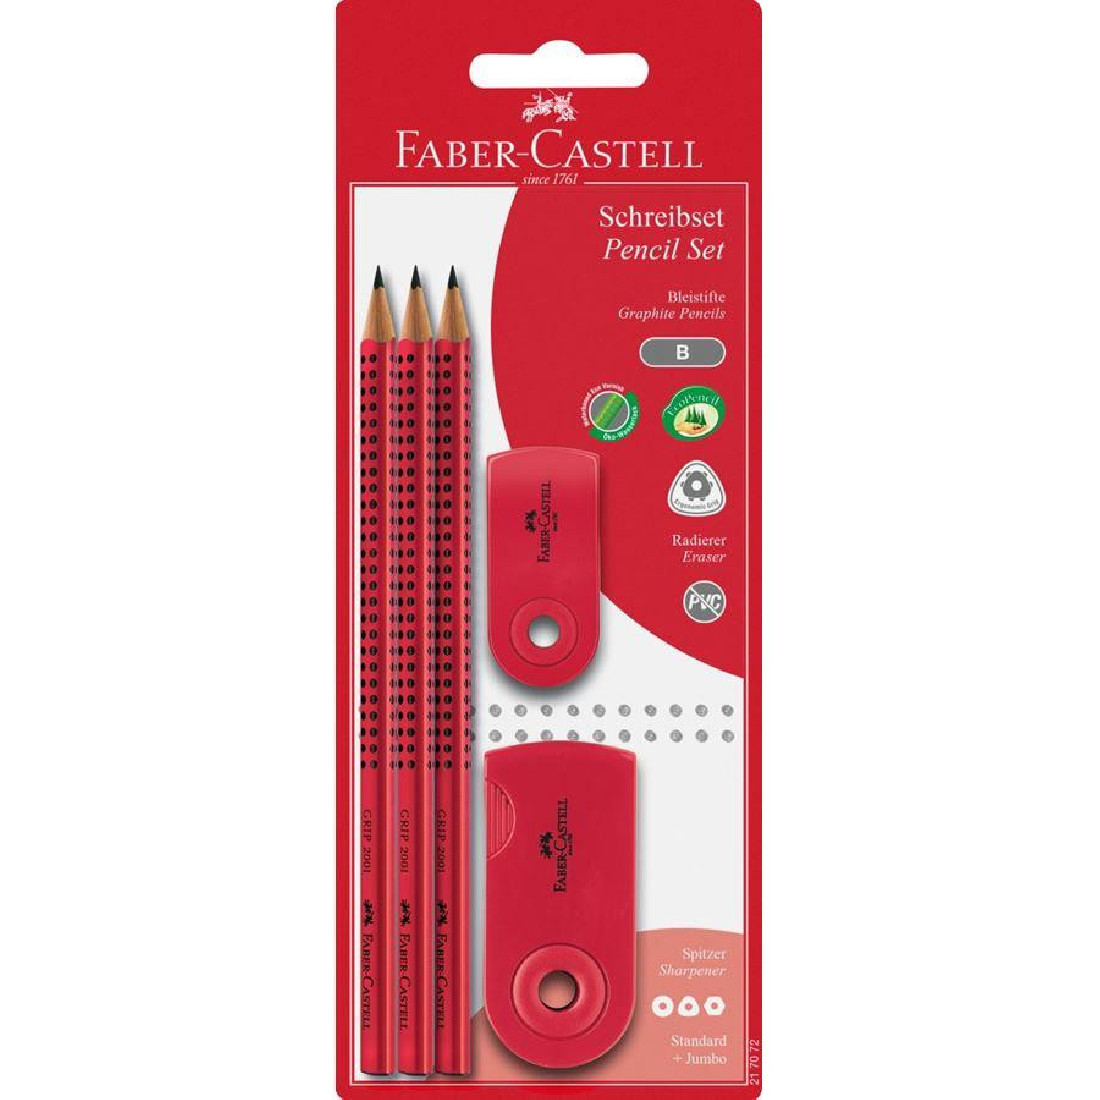 Faber Castell Sleeve set (pencils-eraser*sharpener) 217072large red